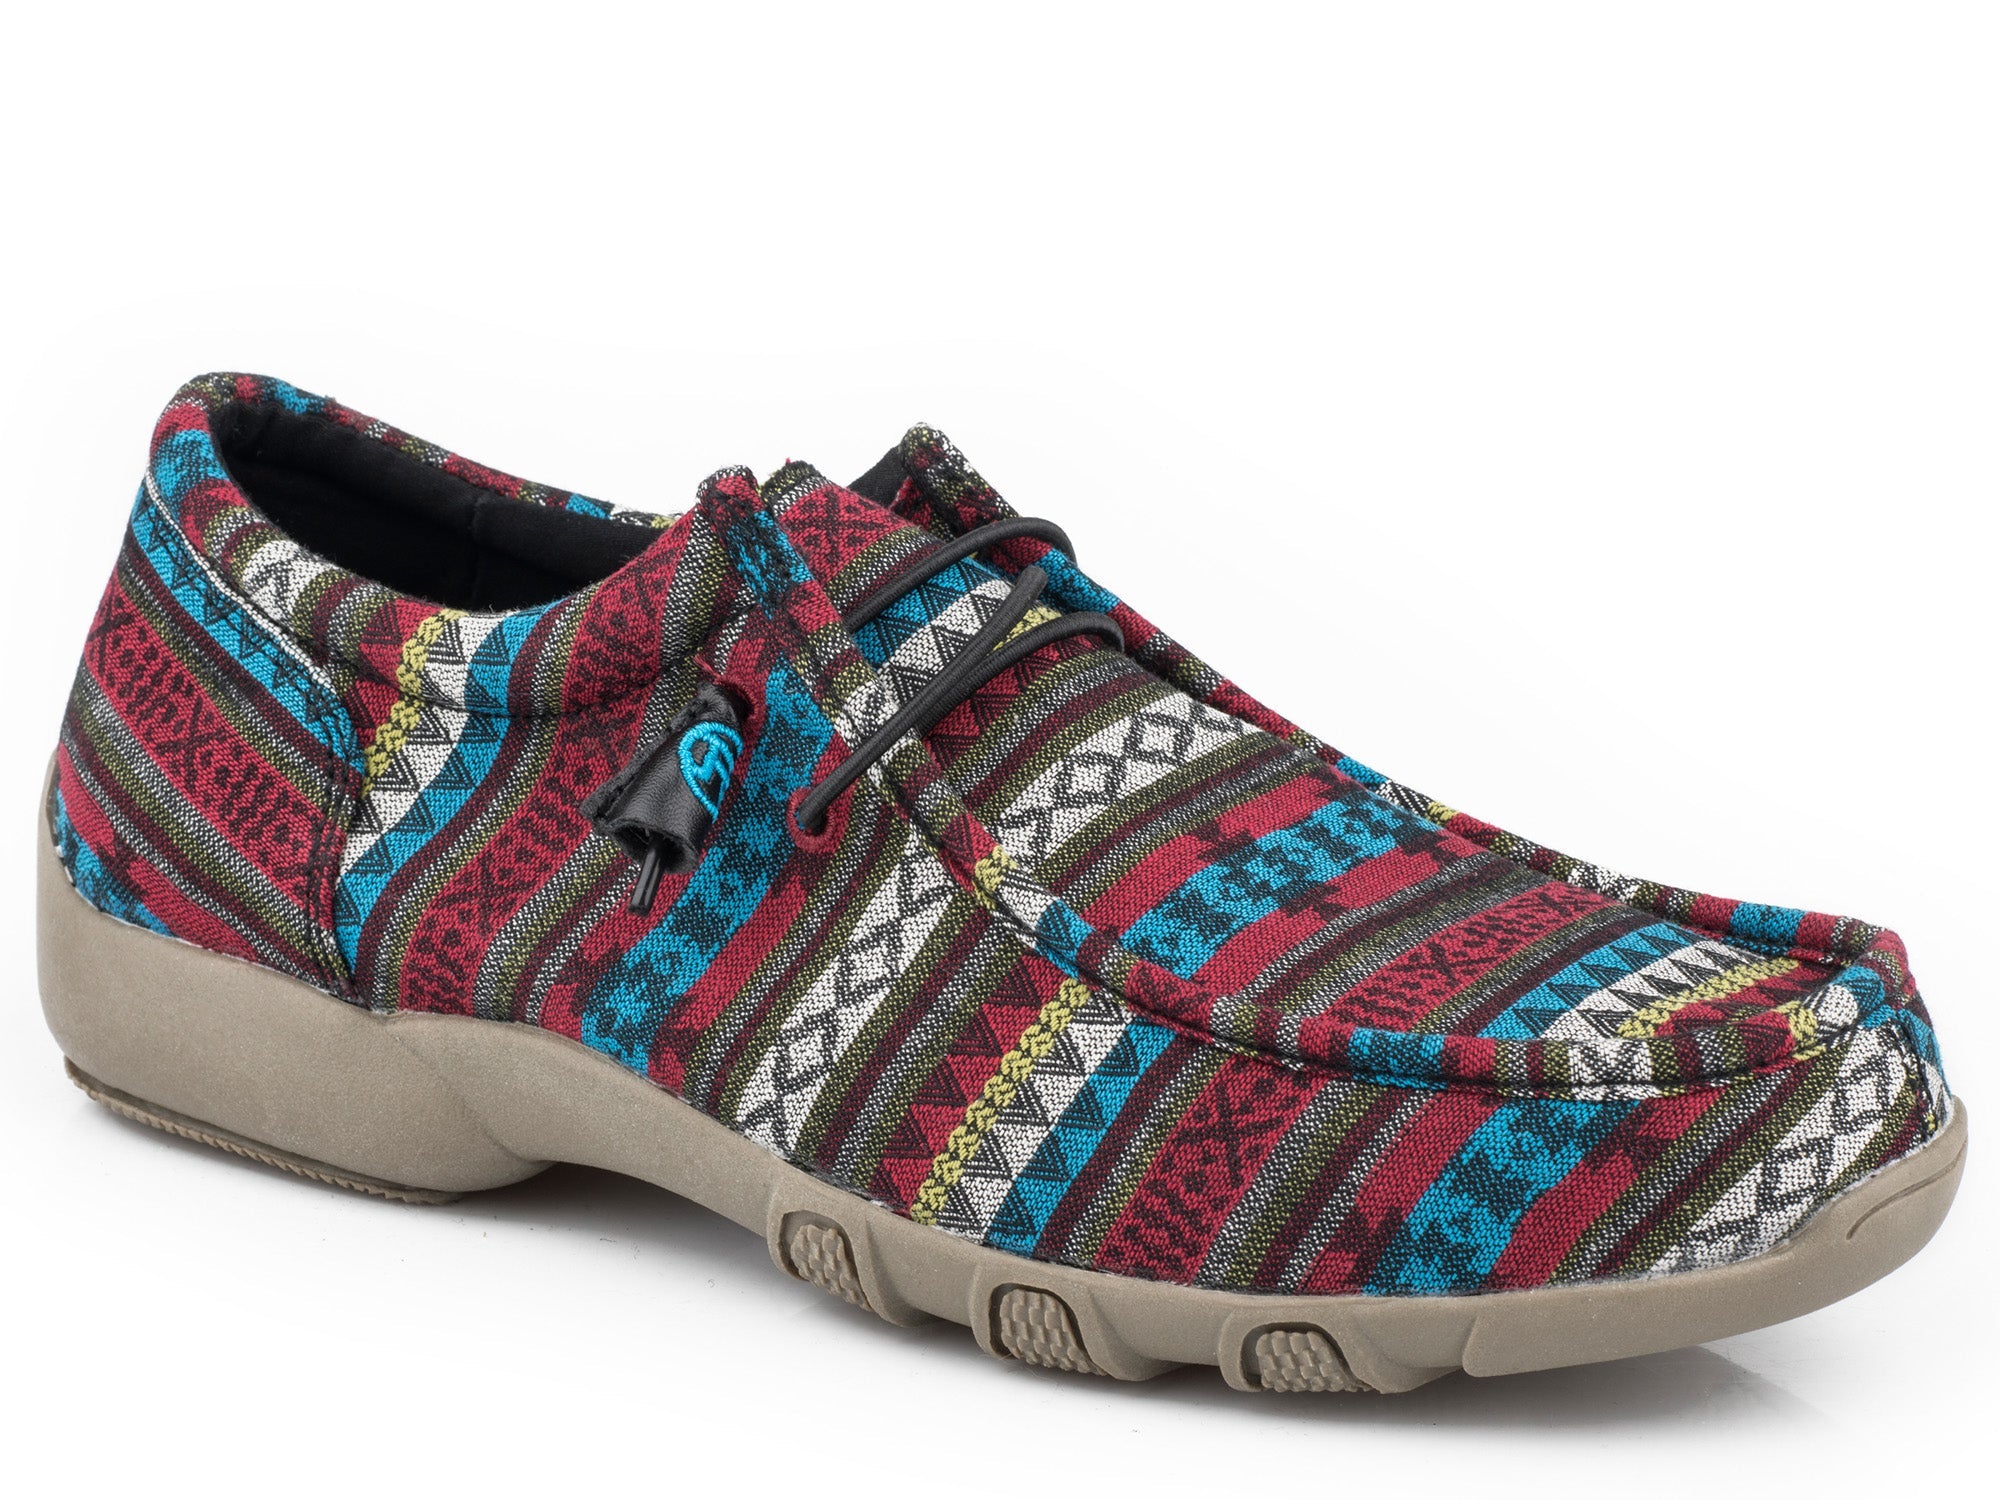 Top more than 65 aztec shoes super hot